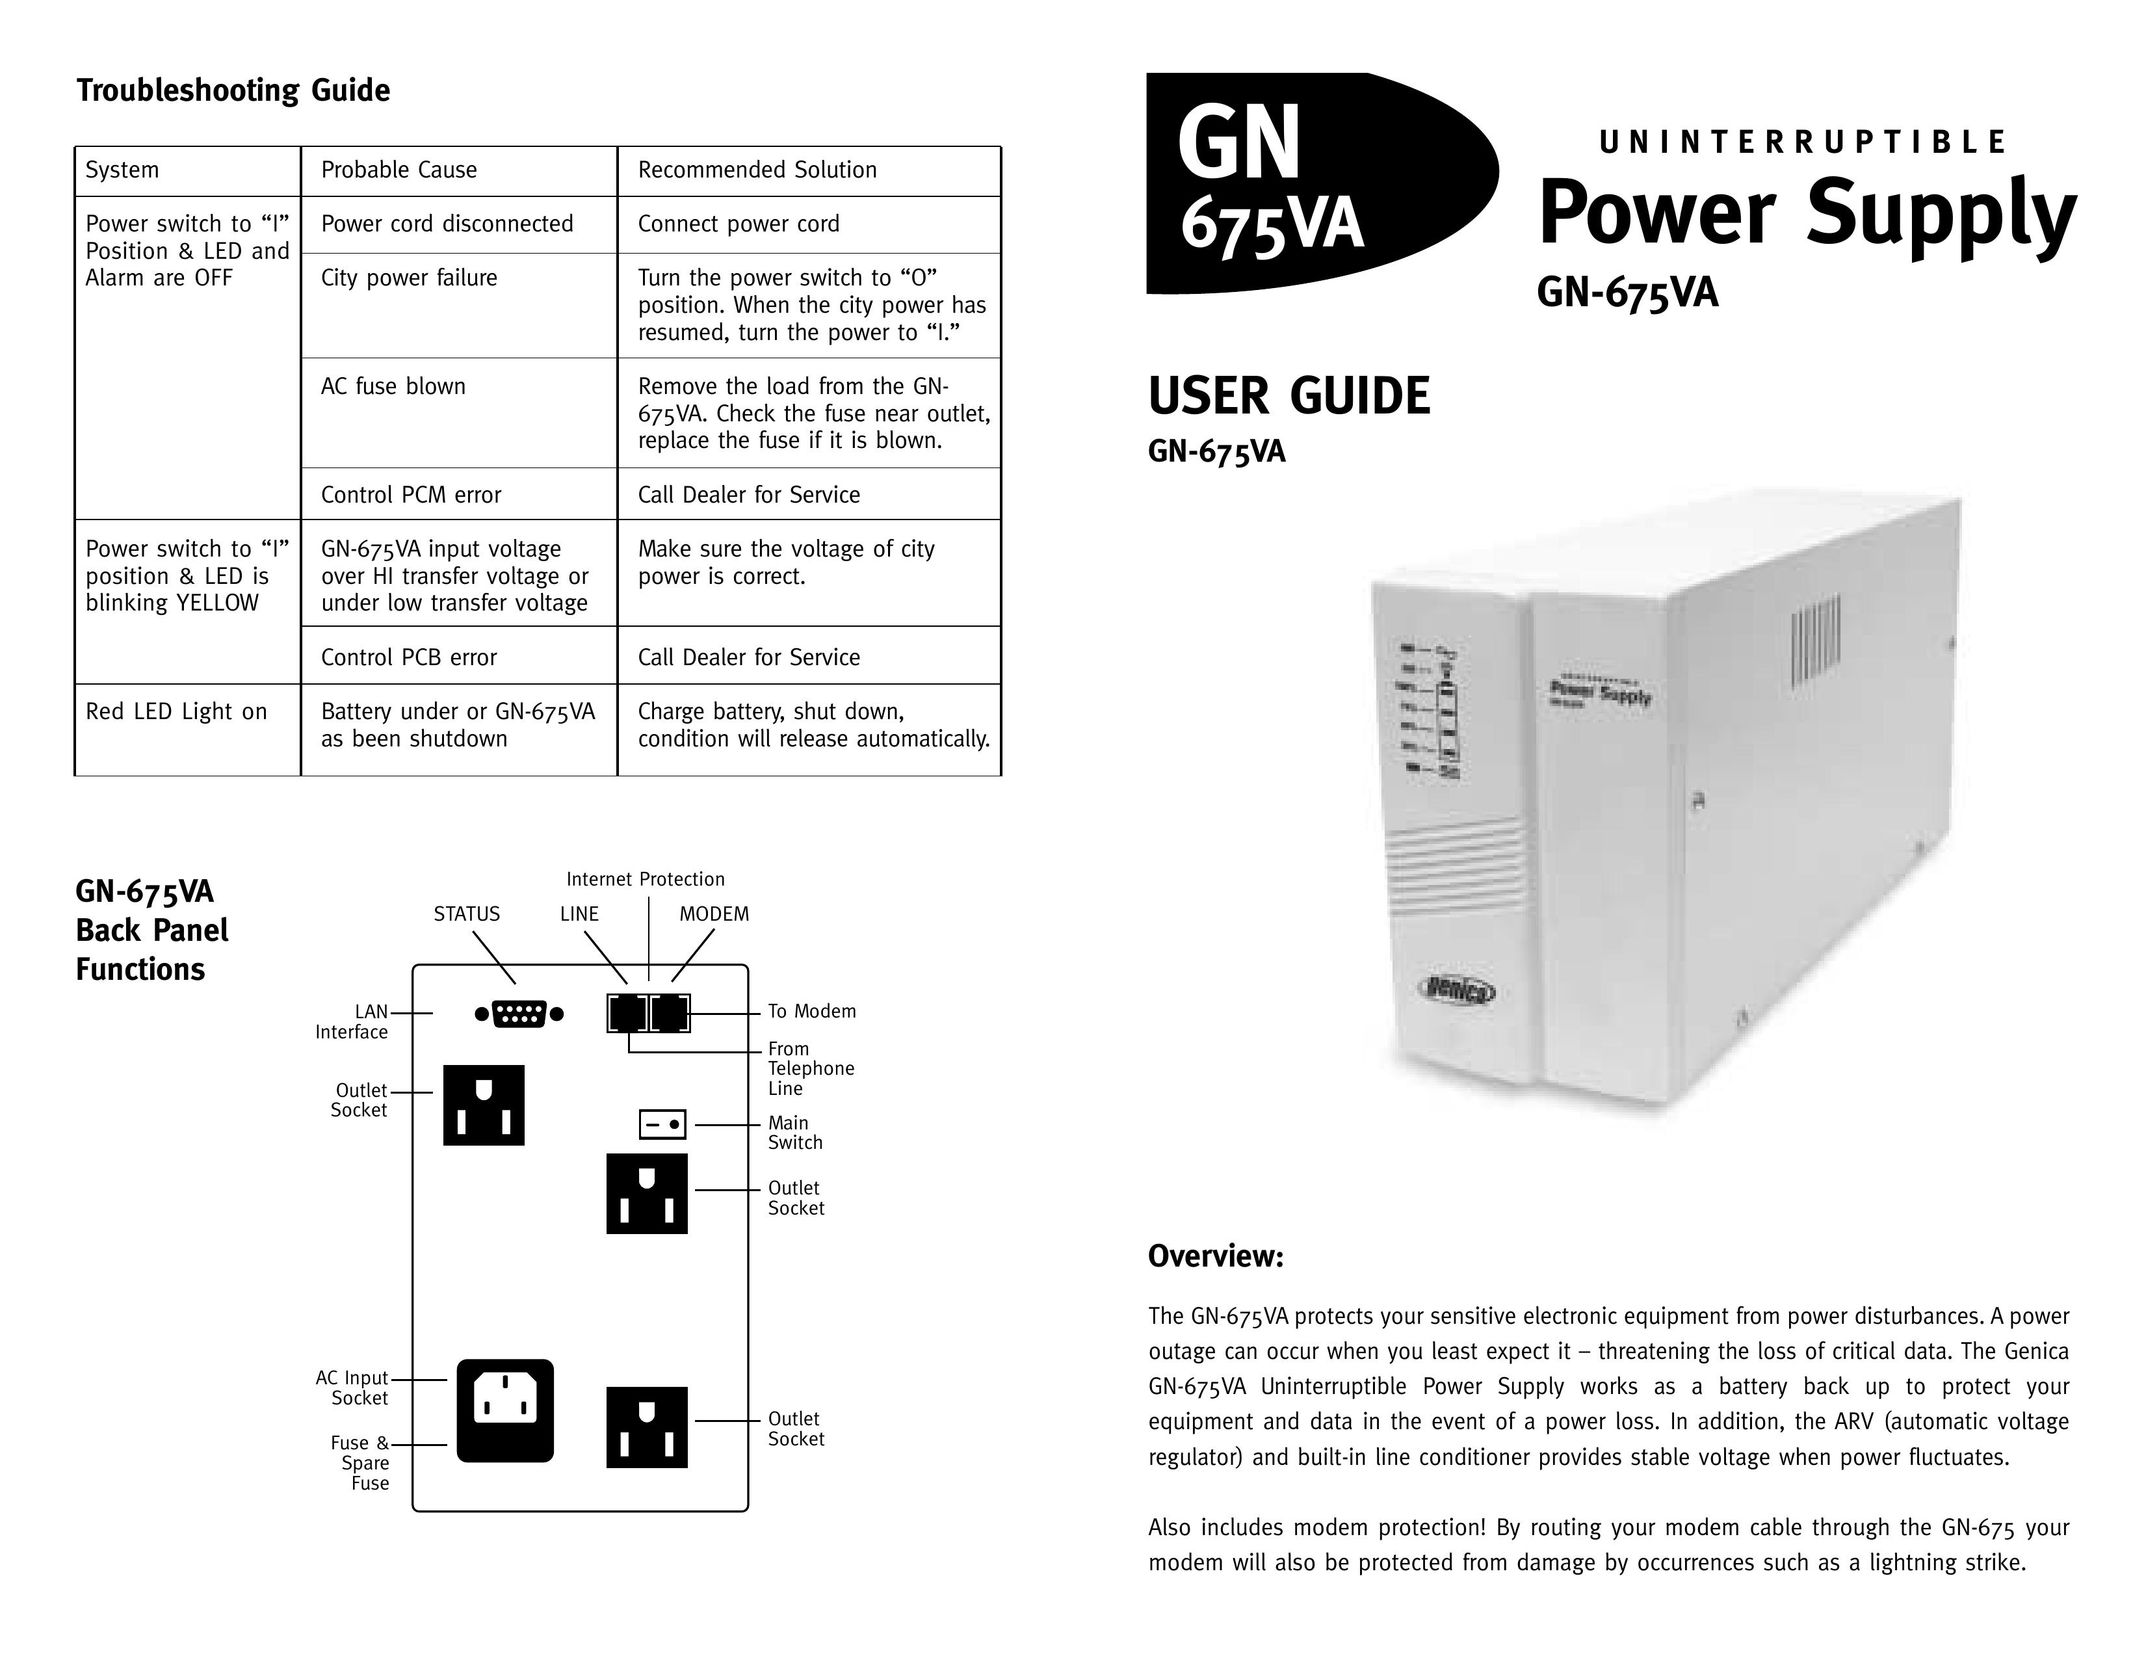 Genica GN-675VA Power Supply User Manual